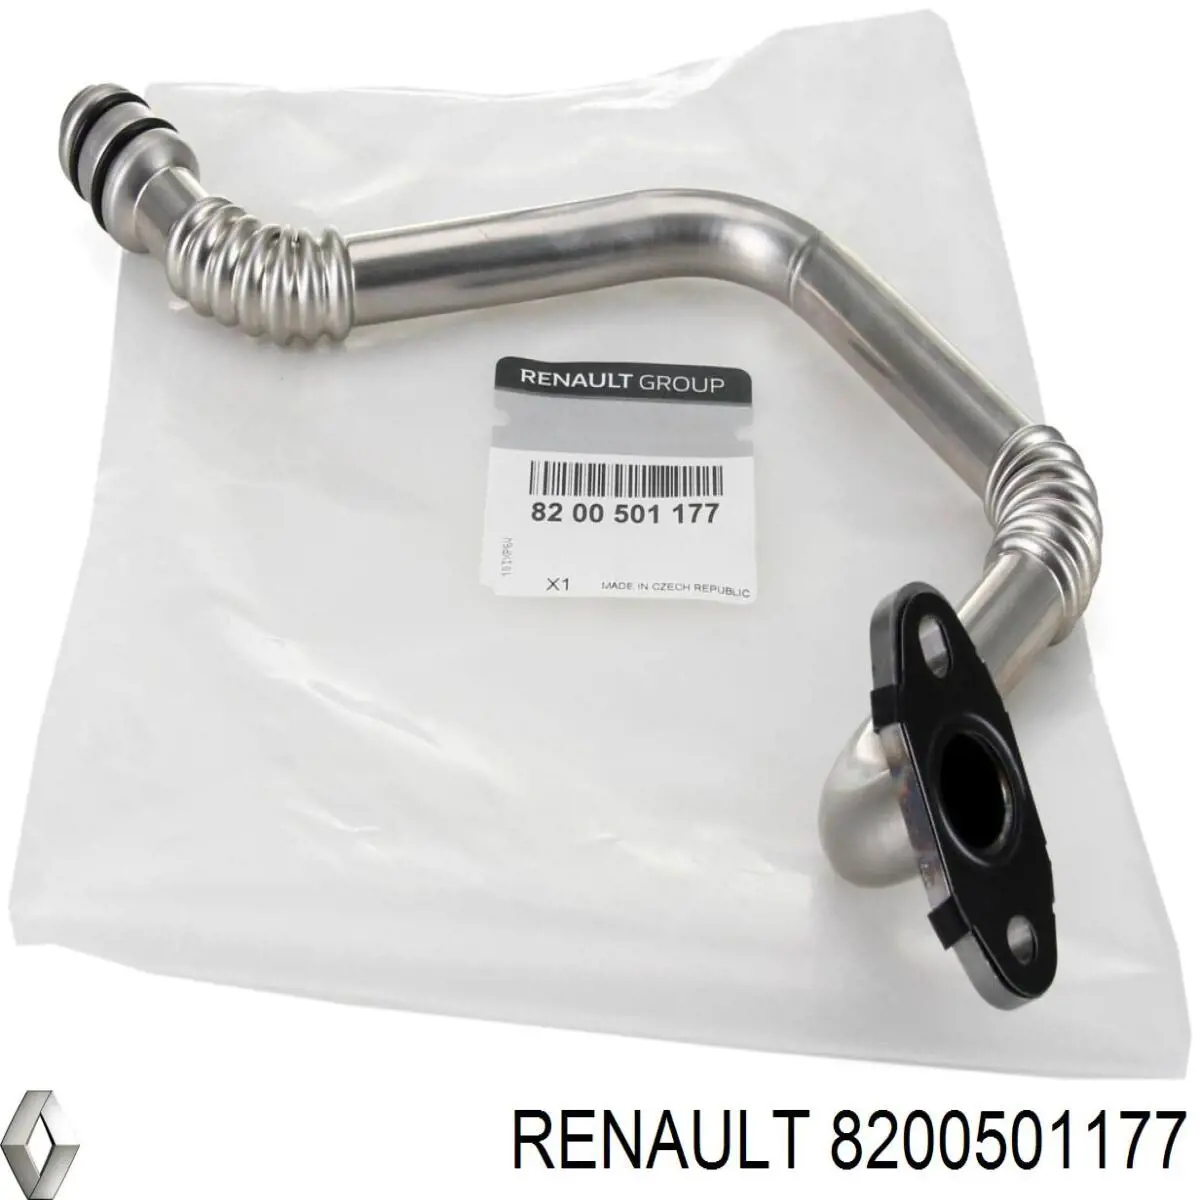 8200501177 Renault (RVI) tubo (manguera Para Drenar El Aceite De Una Turbina)